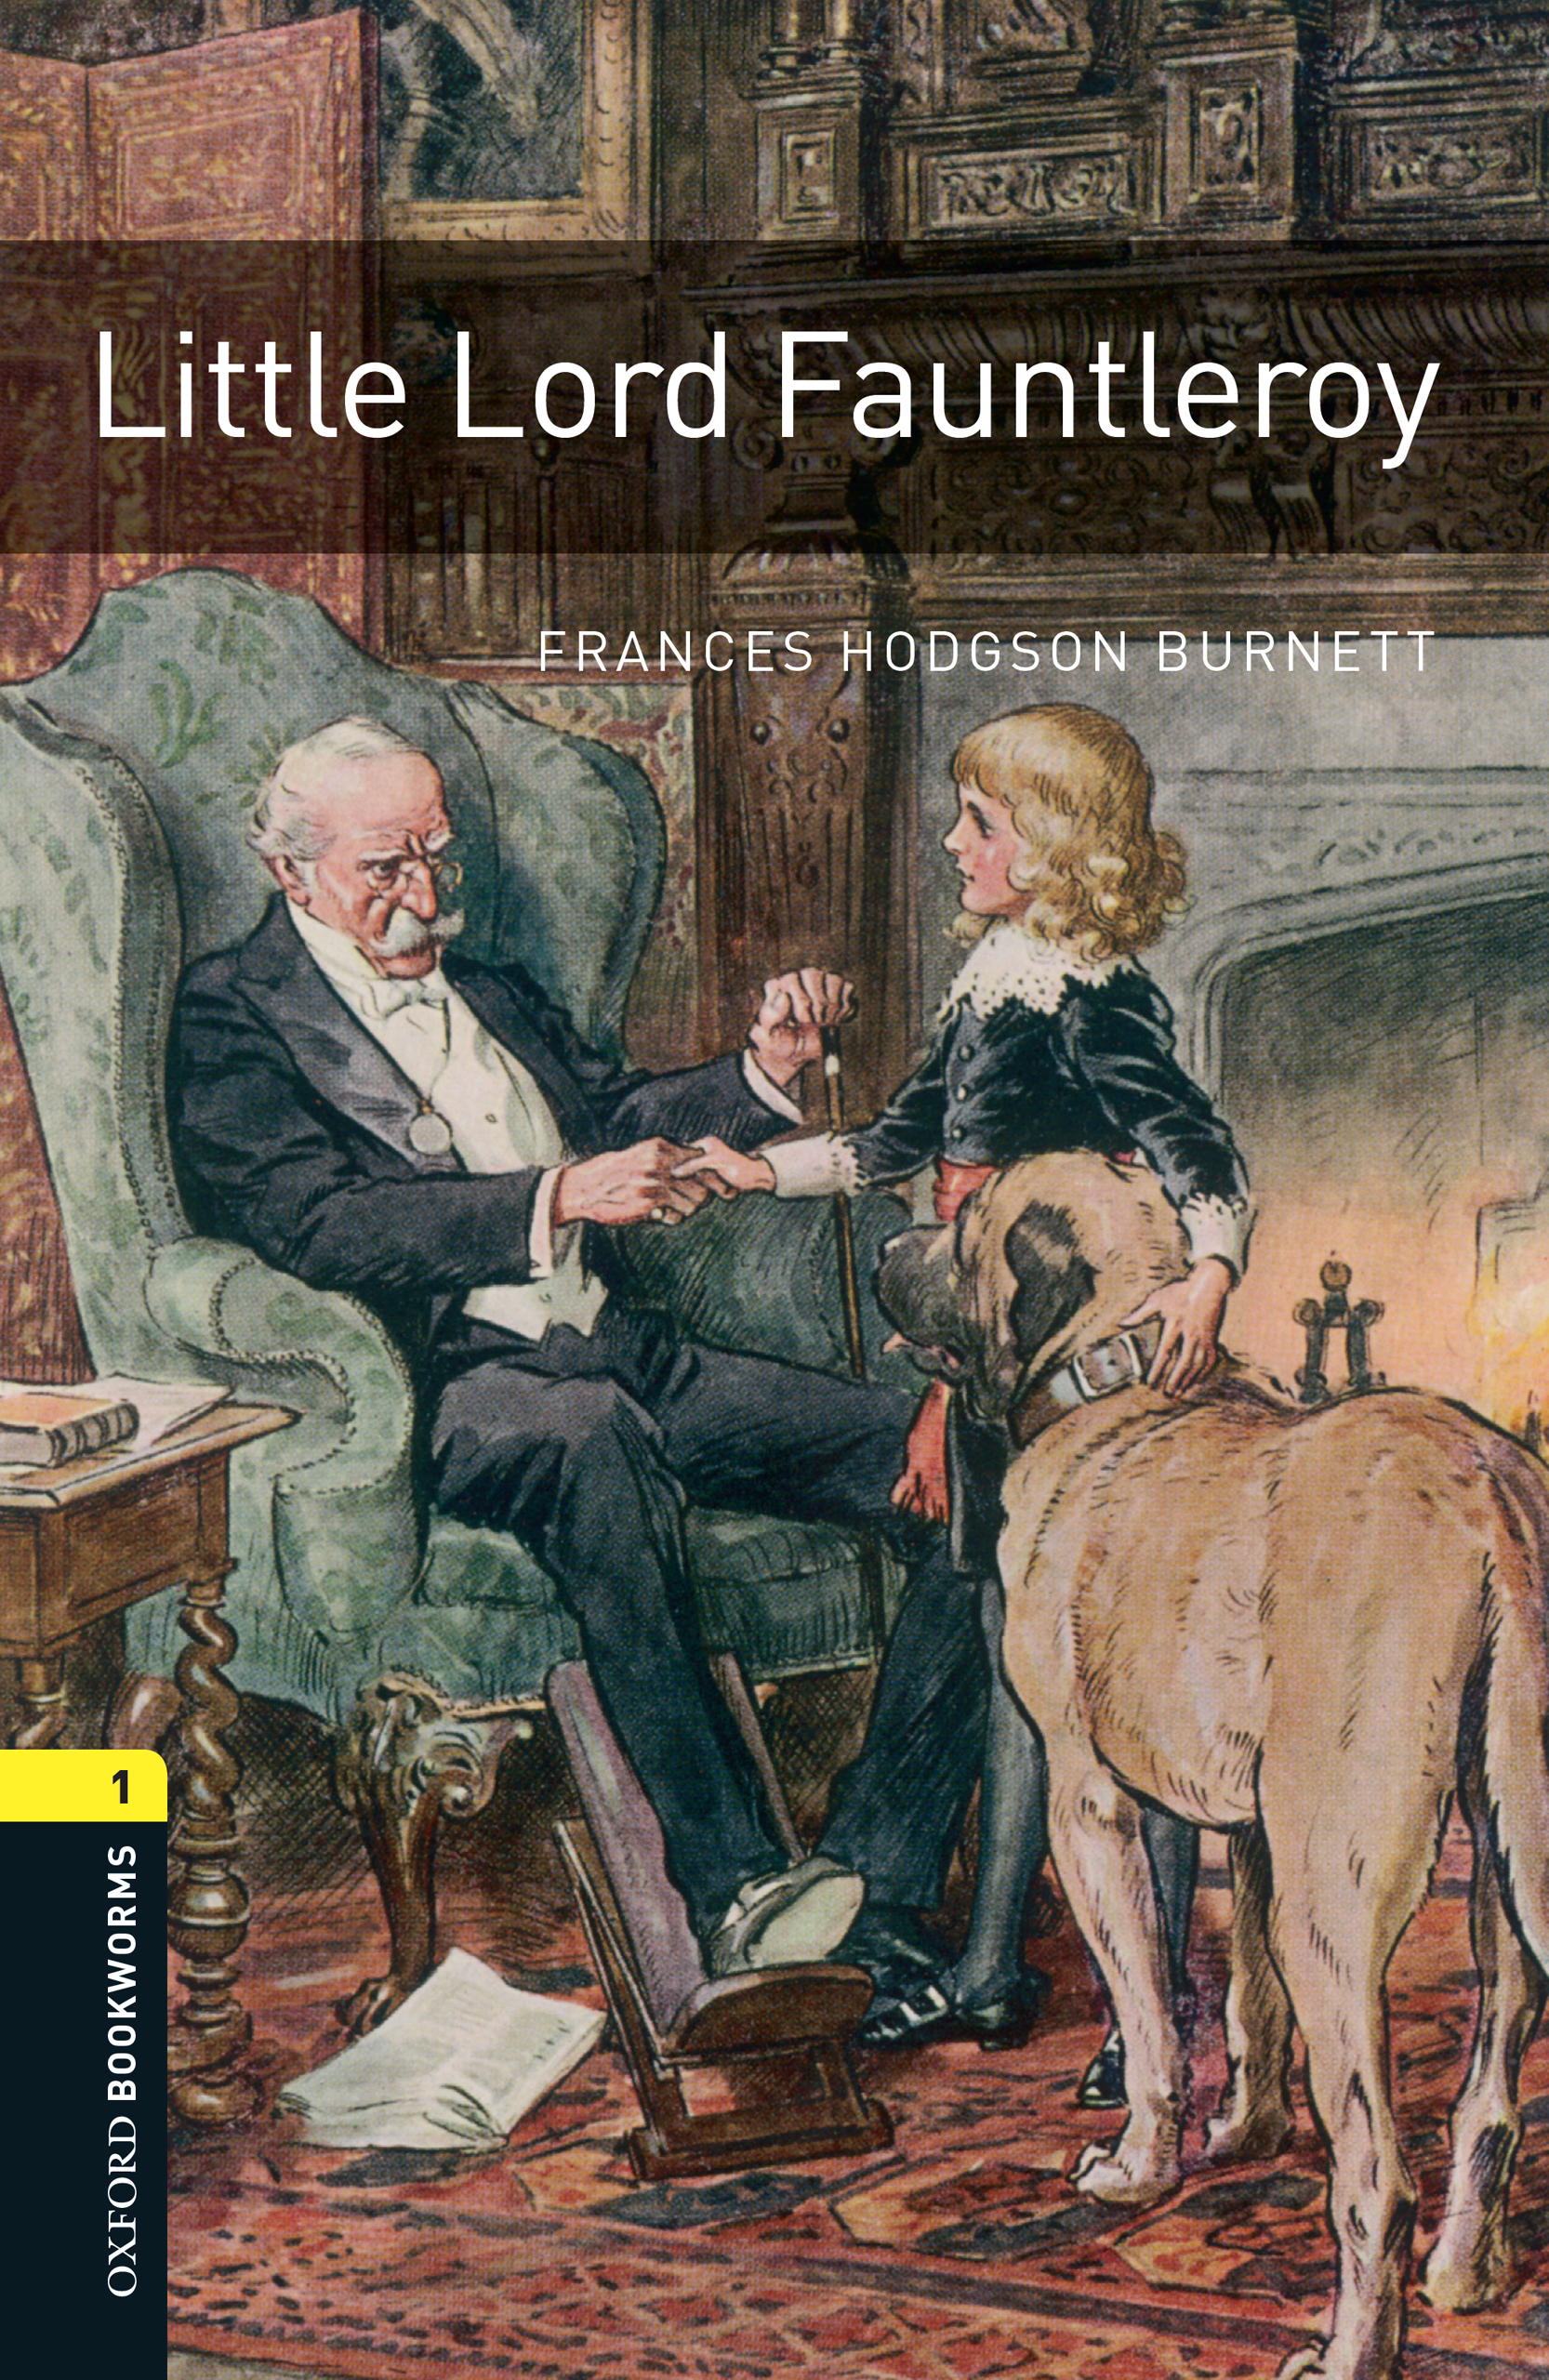 Книга Little Lord Fauntleroy из серии , созданная Frances Burnett, может относится к жанру Иностранные языки, Иностранные языки, Зарубежная образовательная литература. Стоимость электронной книги Little Lord Fauntleroy с идентификатором 23573258 составляет 405.87 руб.